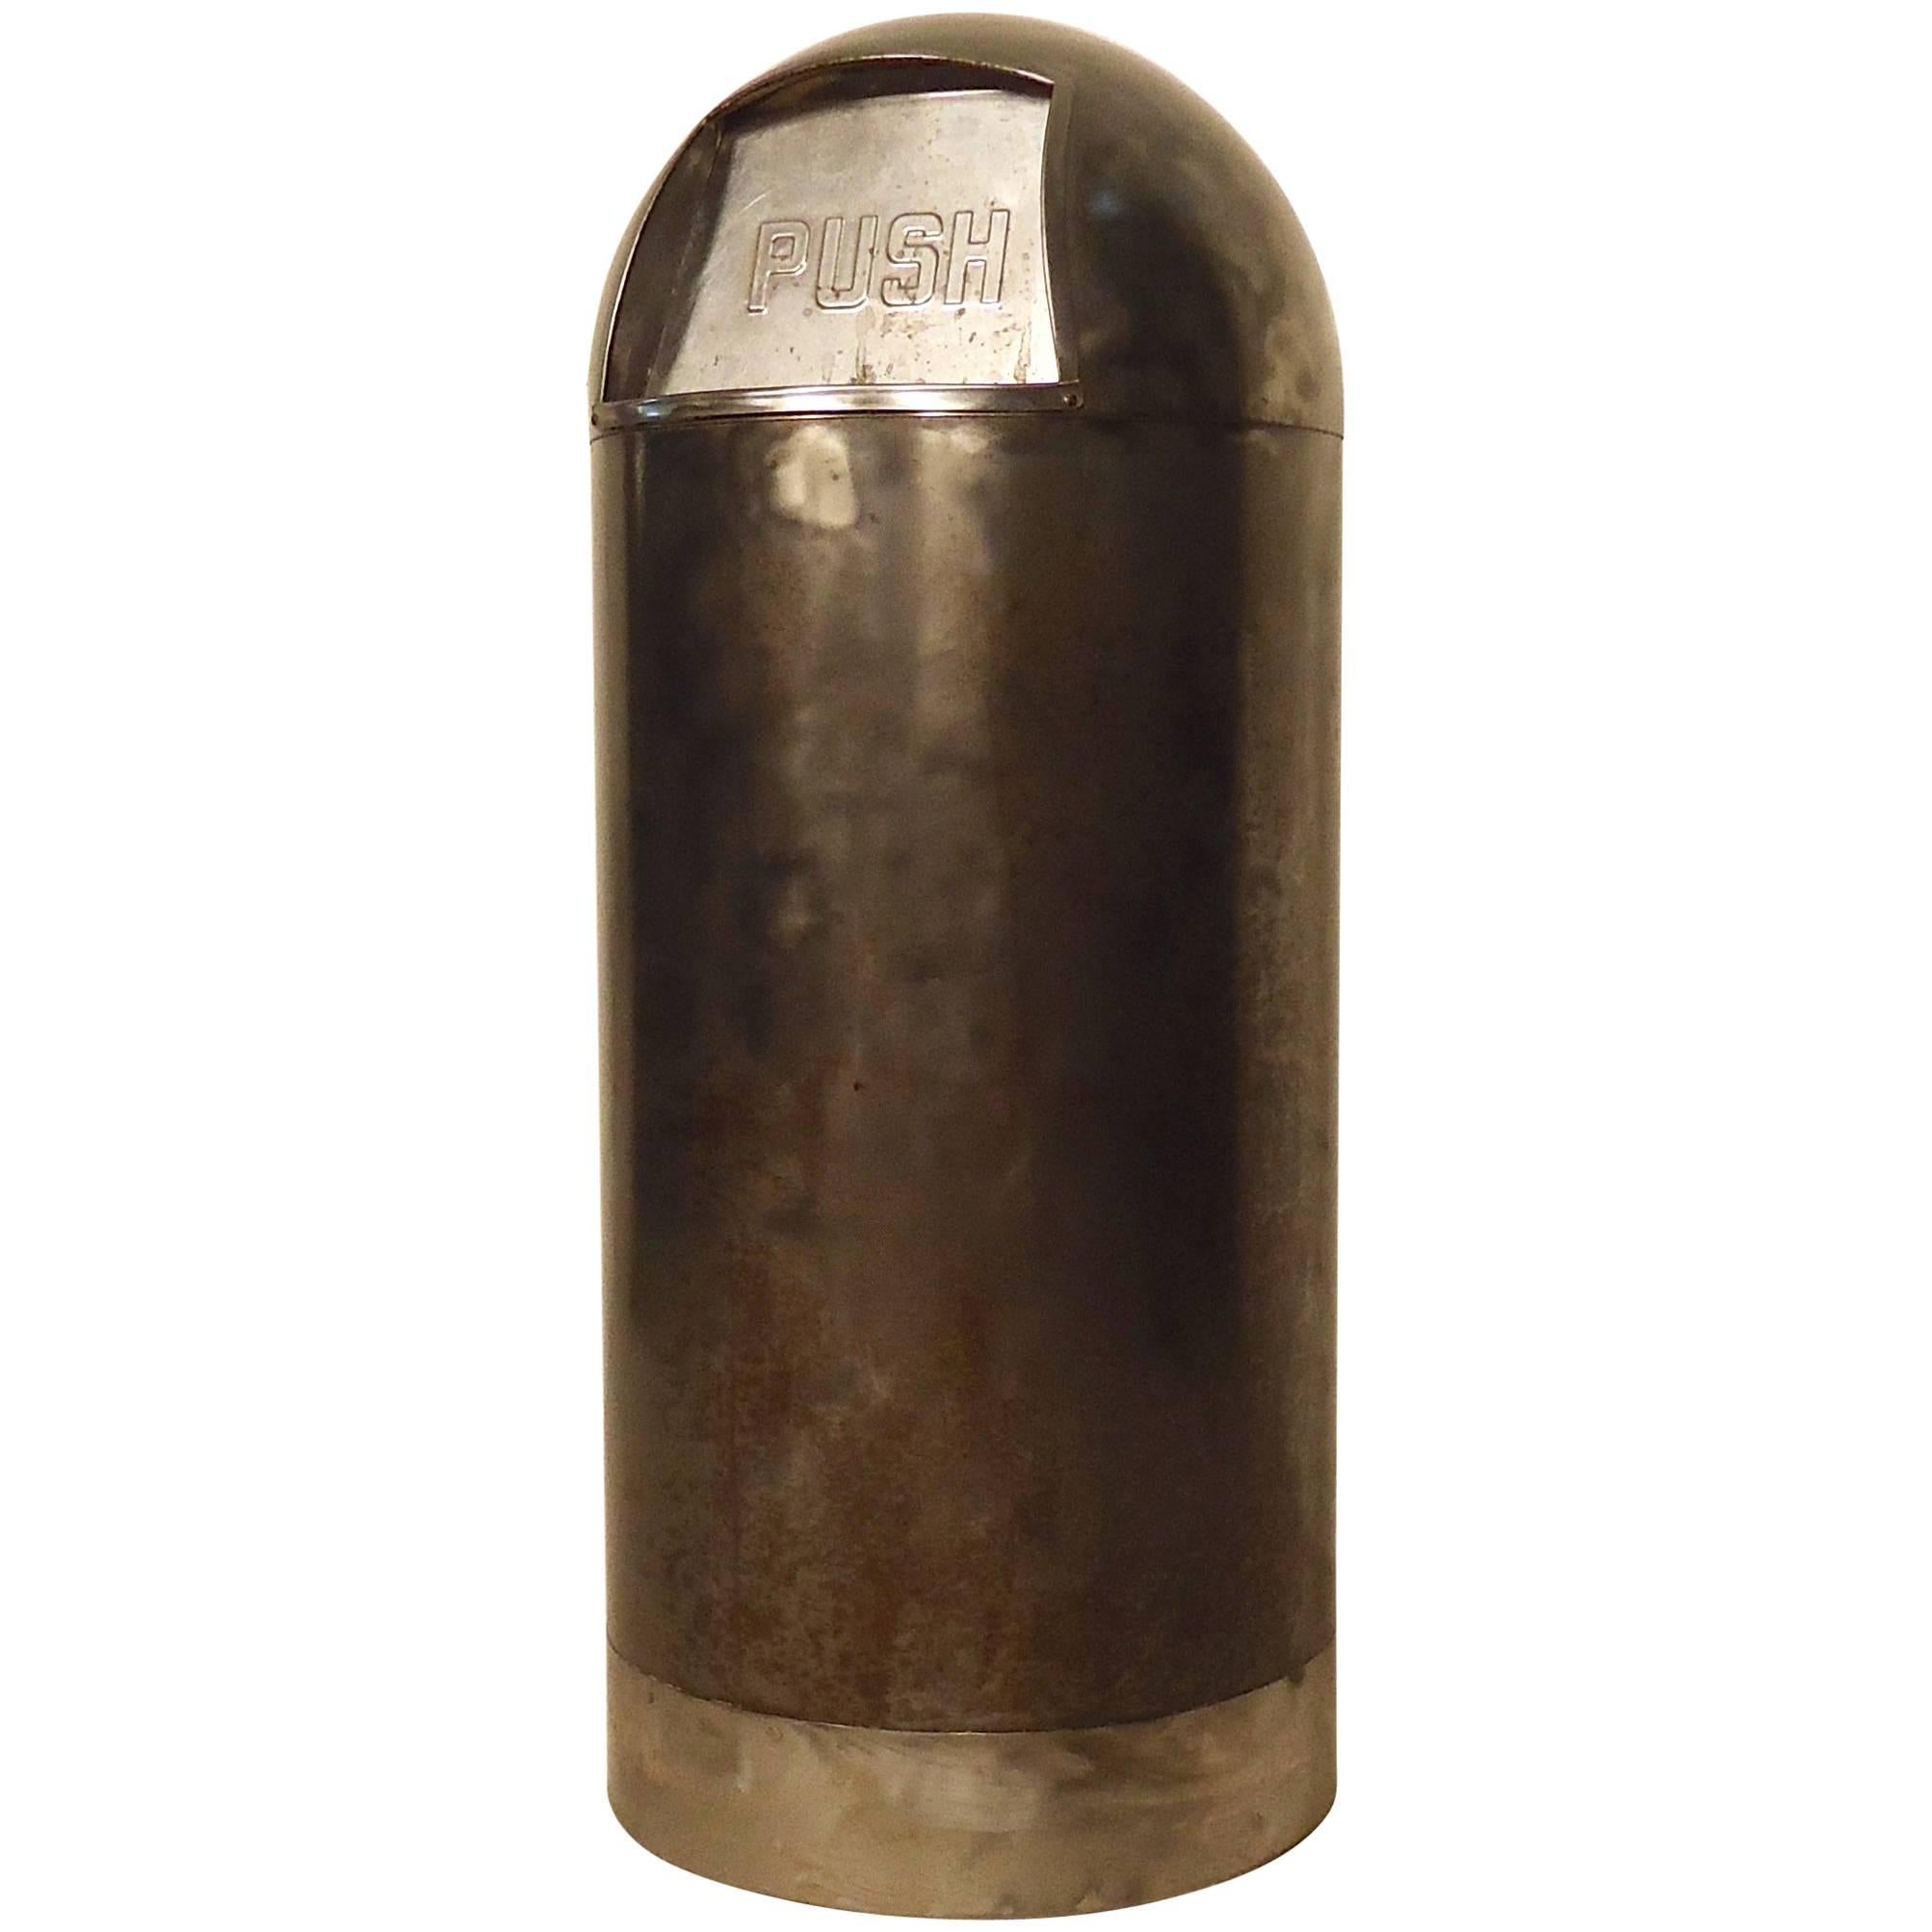 Vintage "Bullet" Trash Can with Liner